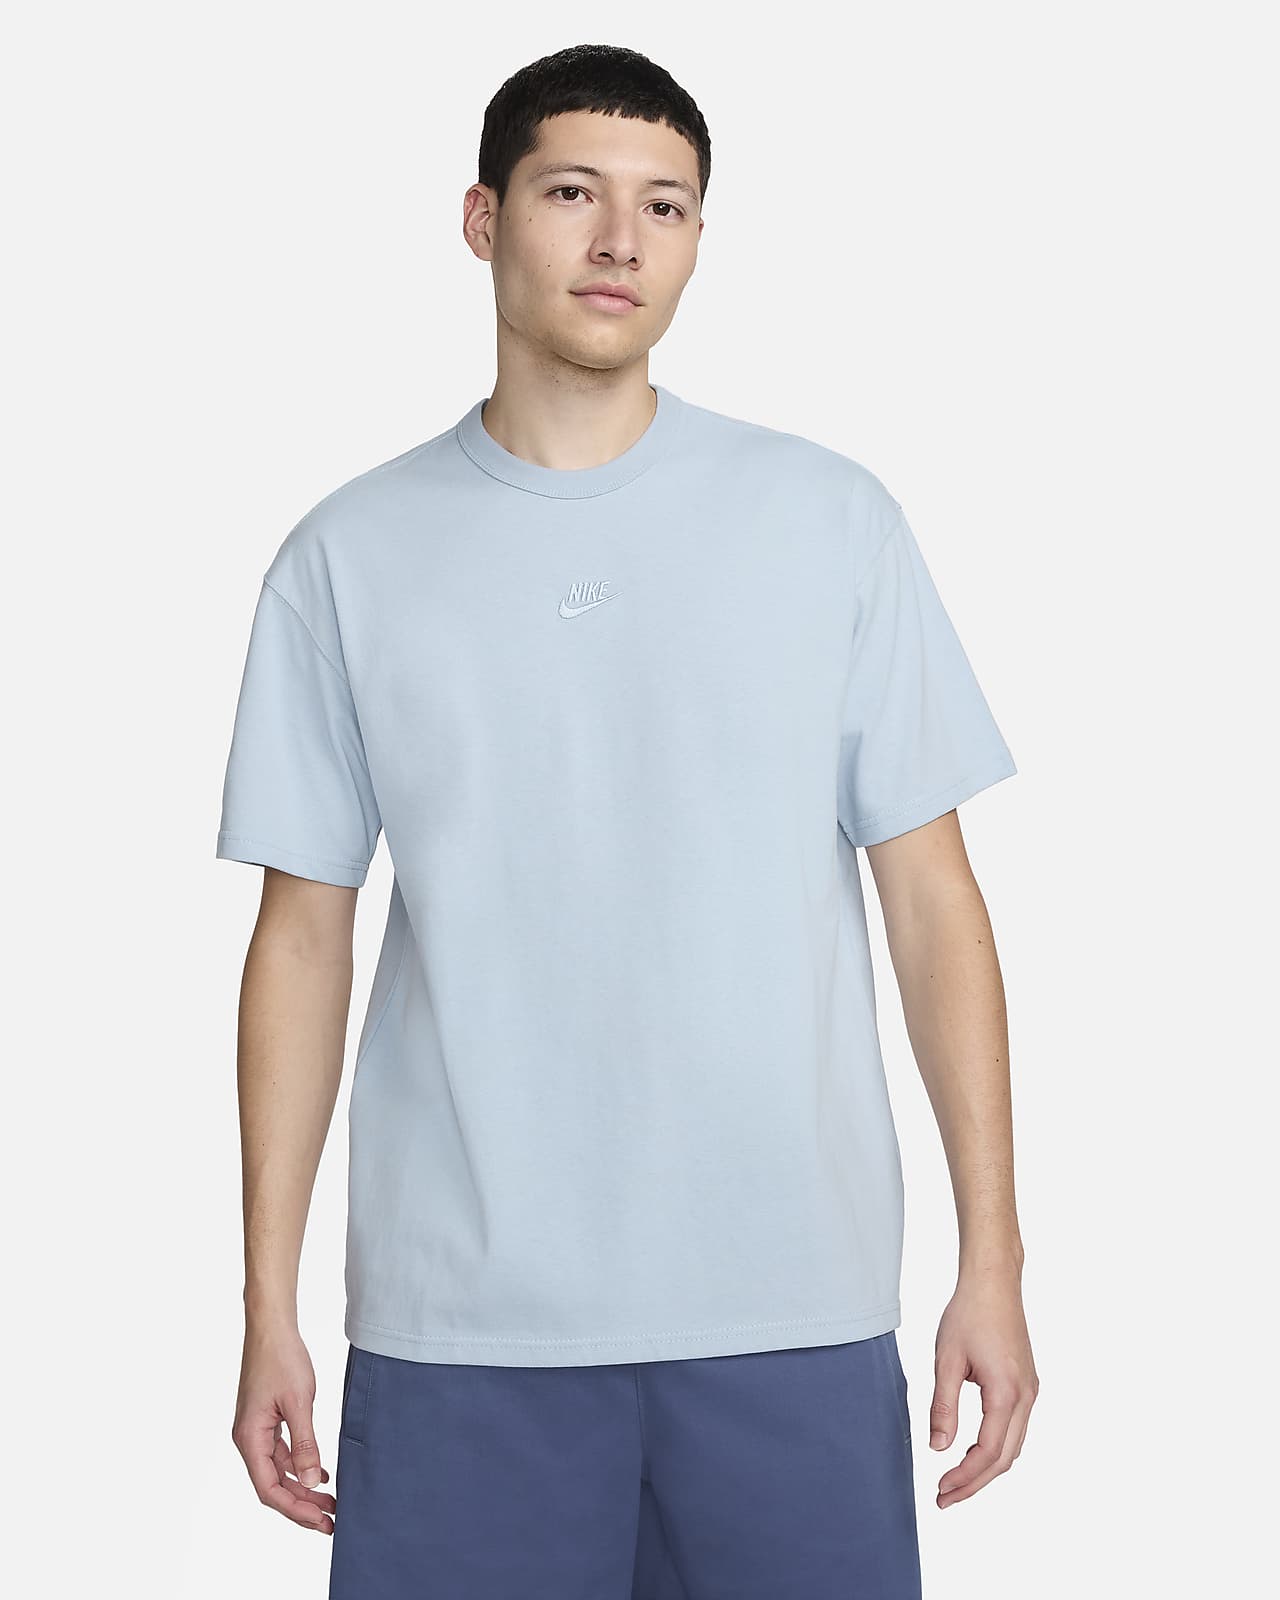 T-shirt T-shirt men's T-shirt oversize Nike sport black, white